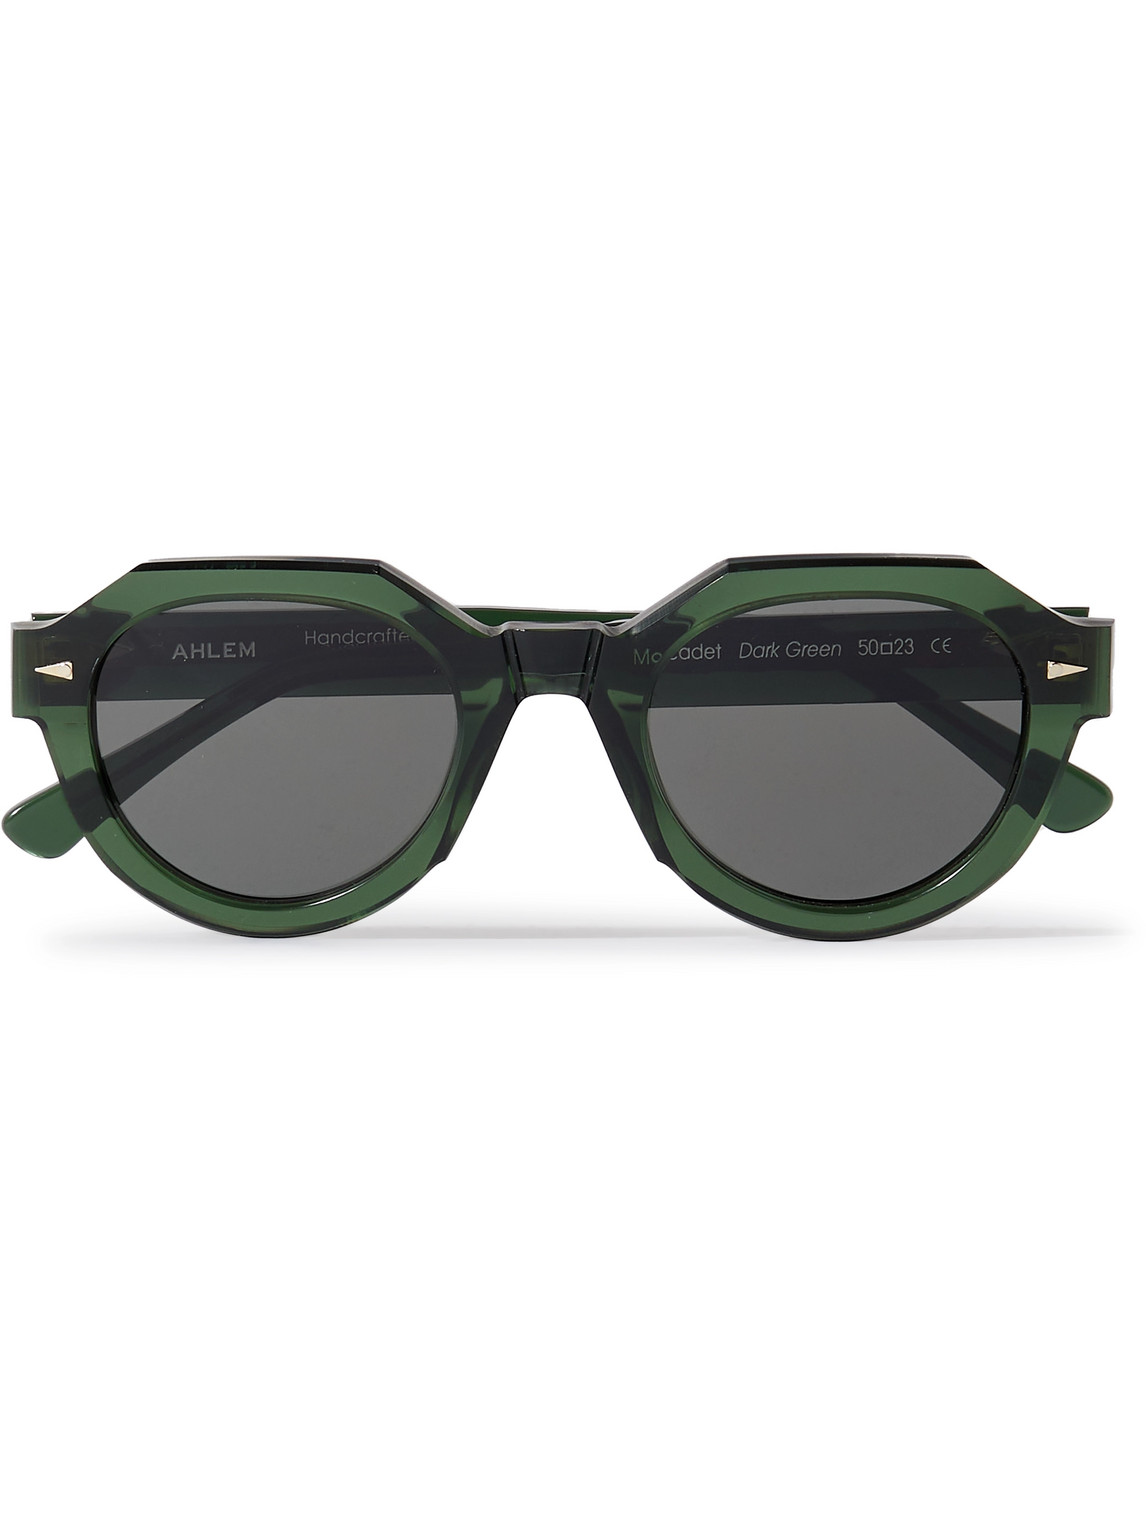 Ahlem Marcadet Hexagonal-frame Acetate Sunglasses In Green